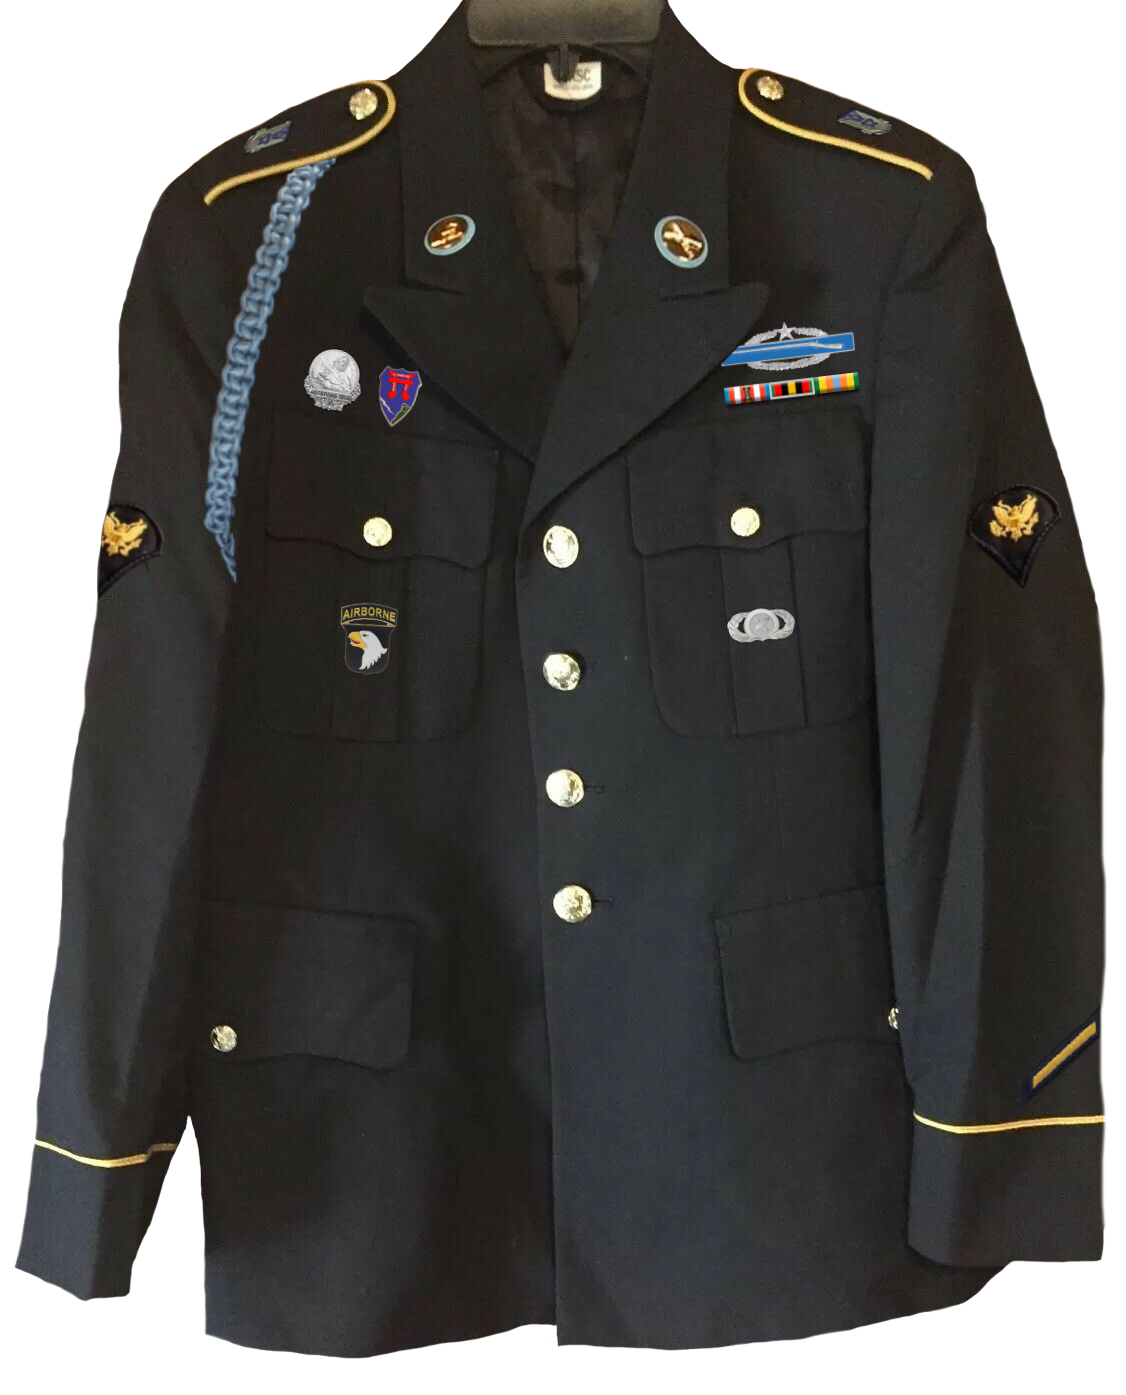 Die Uniform von avenger_995